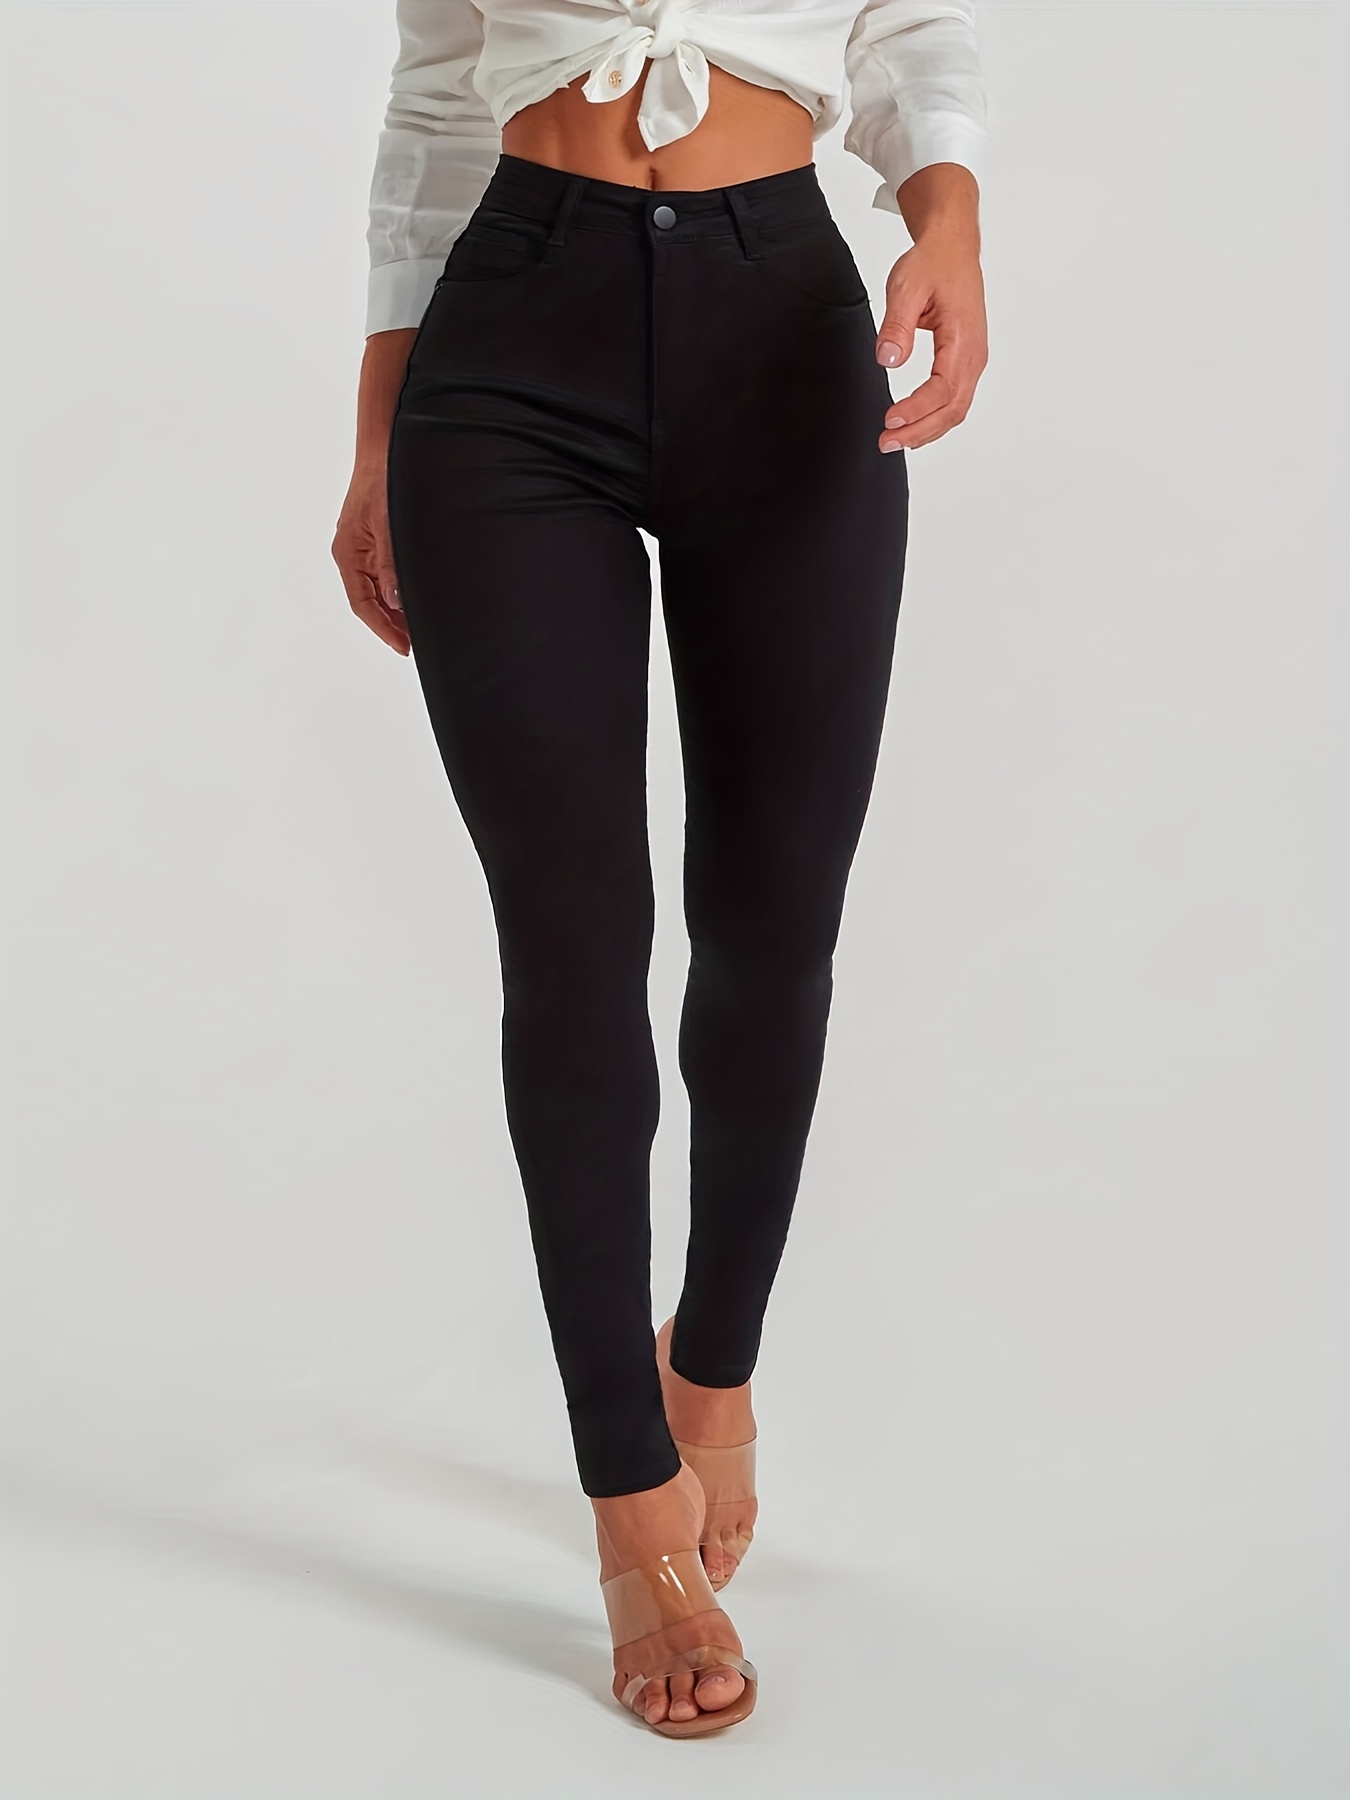 Womenswear skinny jeans figurehugging jeans skinny denim trousers Promod